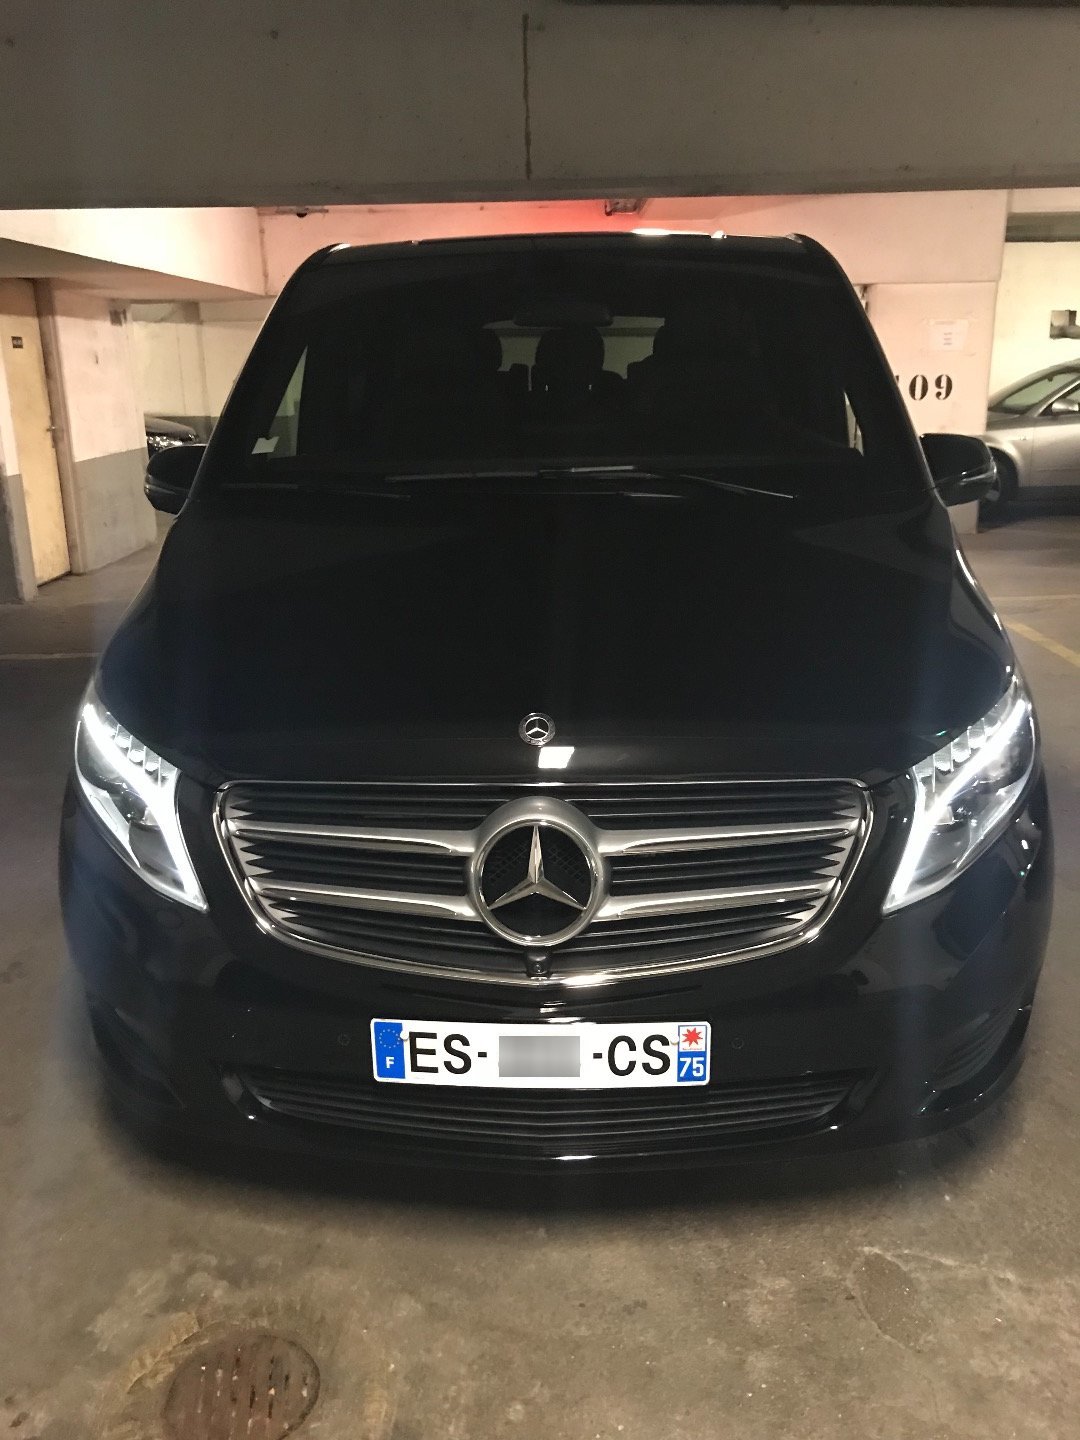 Mietwagen mit Fahrer Paris: Mercedes